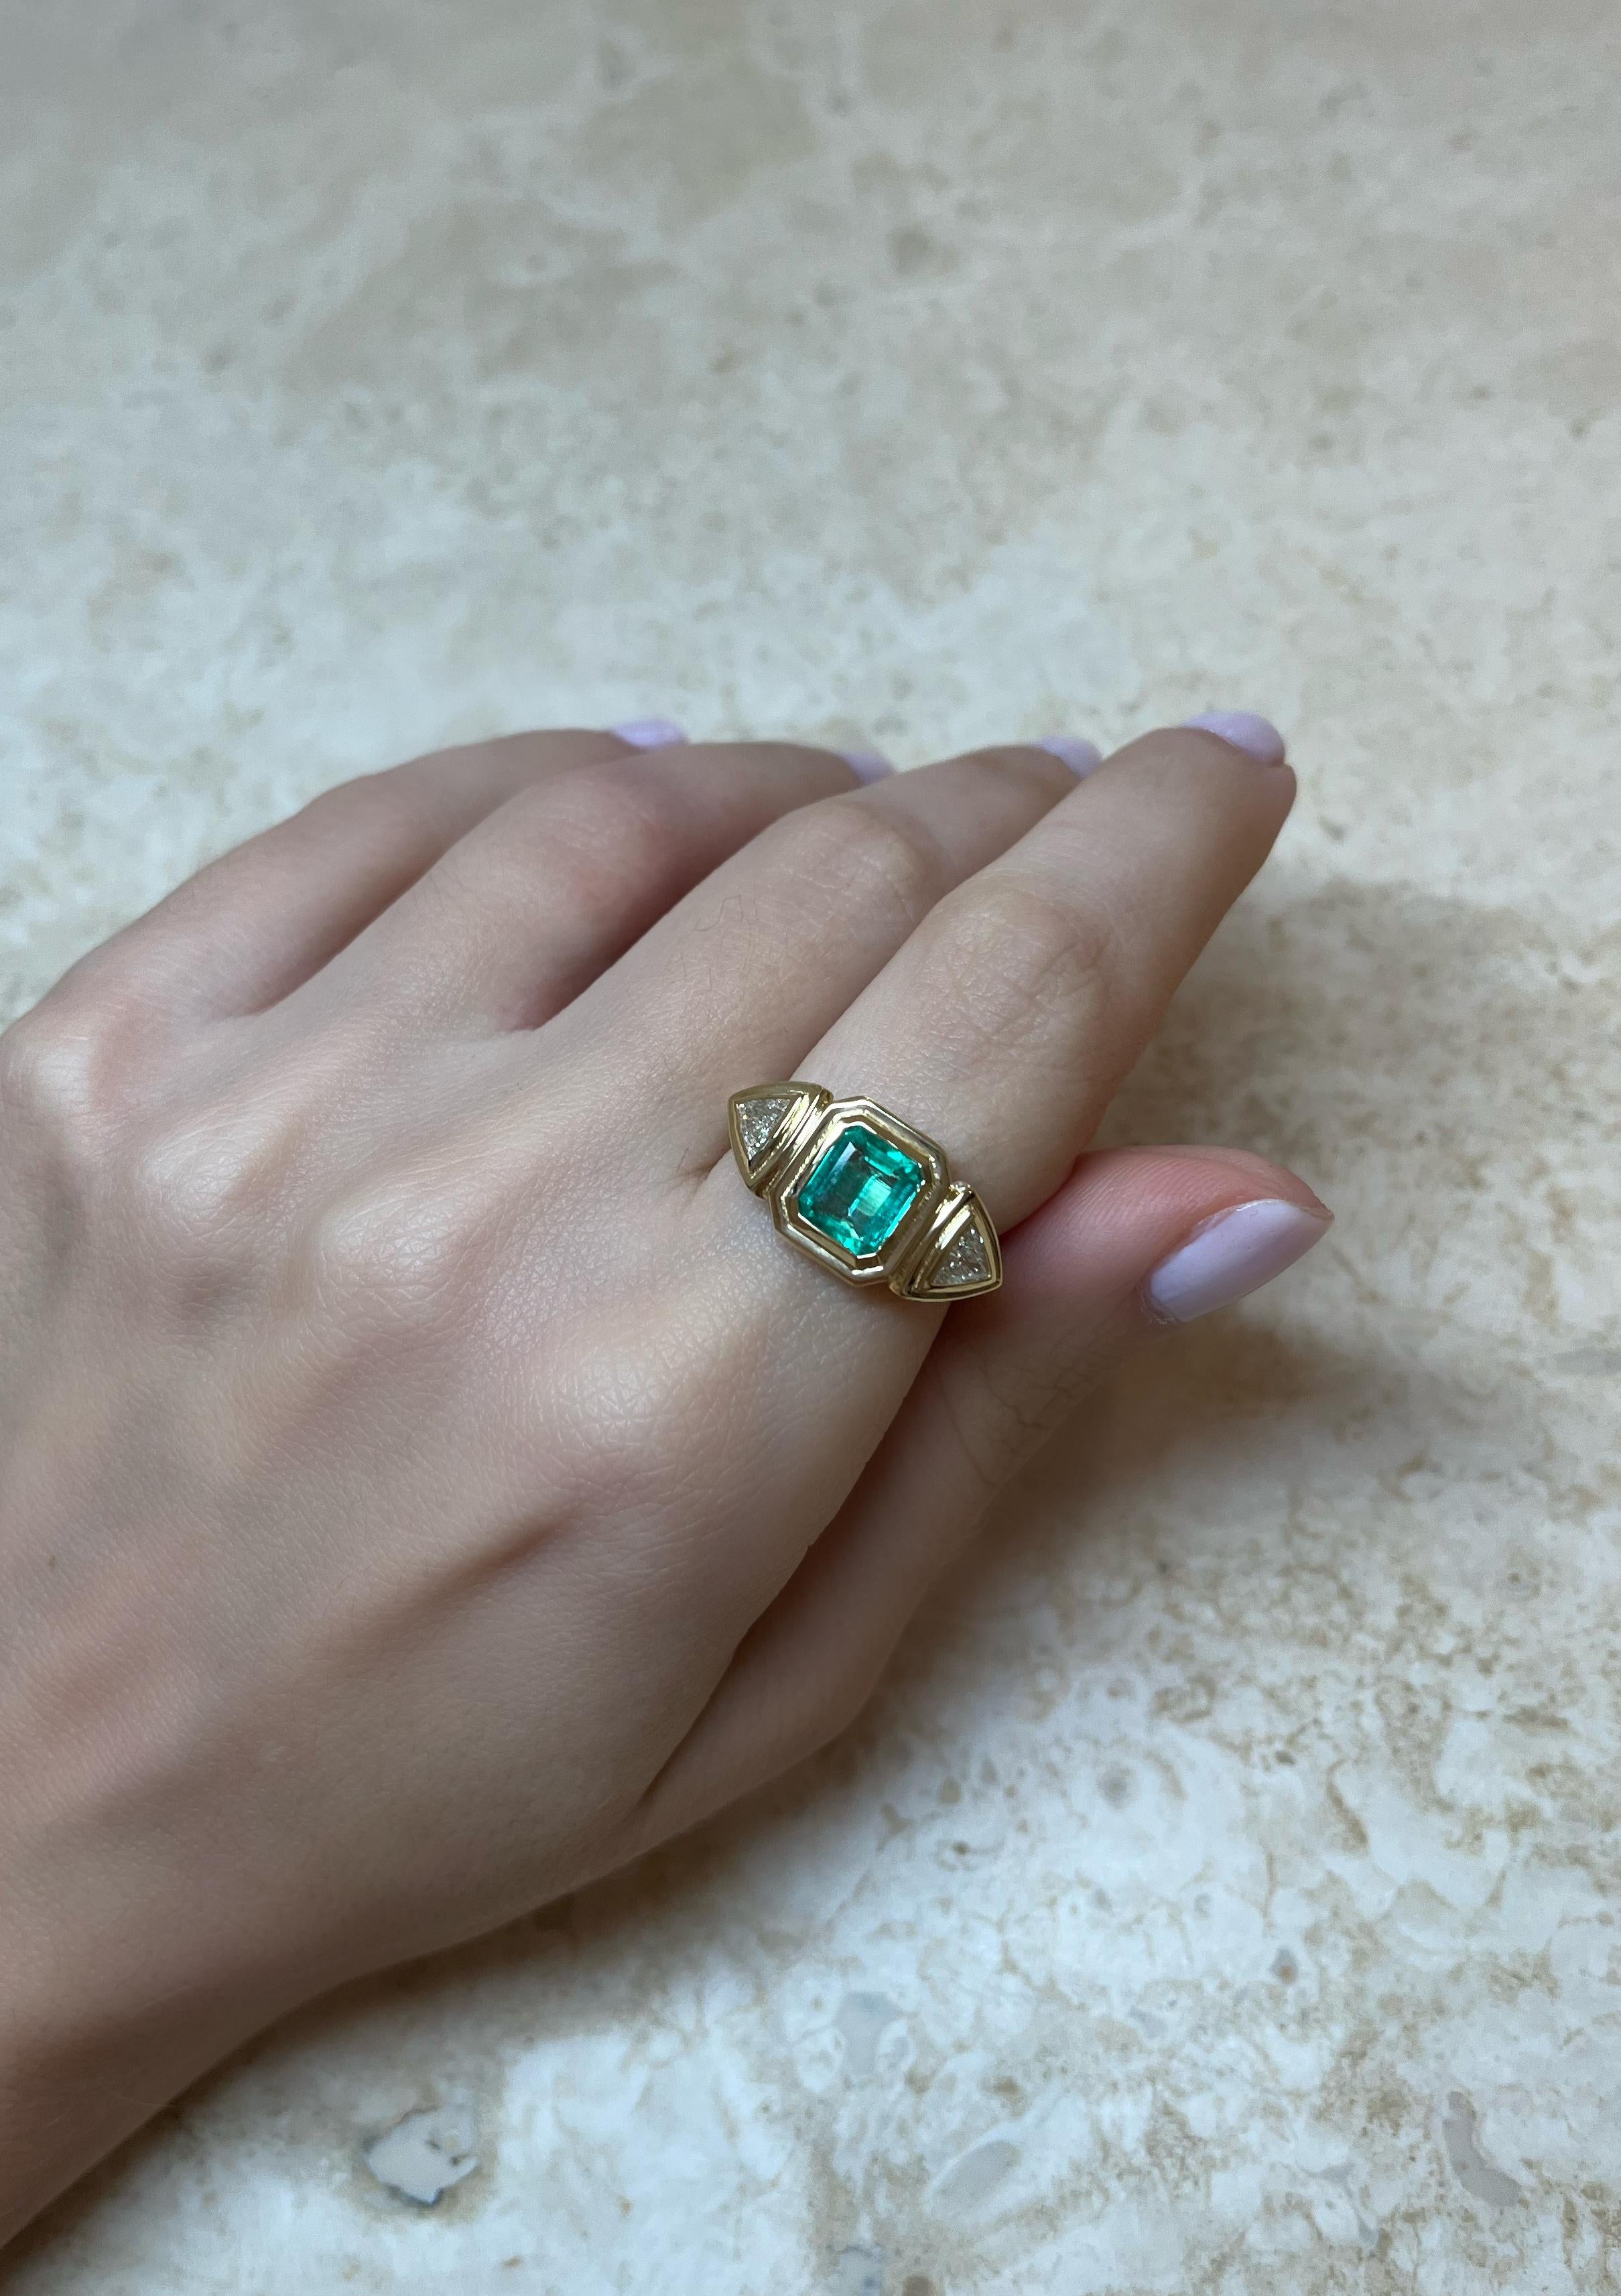 Dieser exquisite Ring aus 18-karätigem Gold trägt in der Mitte einen natürlichen Smaragd und zwei natürliche Diamanten im Billionenschliff in einer geometrisch abgestuften Fassung. 

Der Ring wiegt etwas mehr als 6 Gramm Gold, was ihm einen